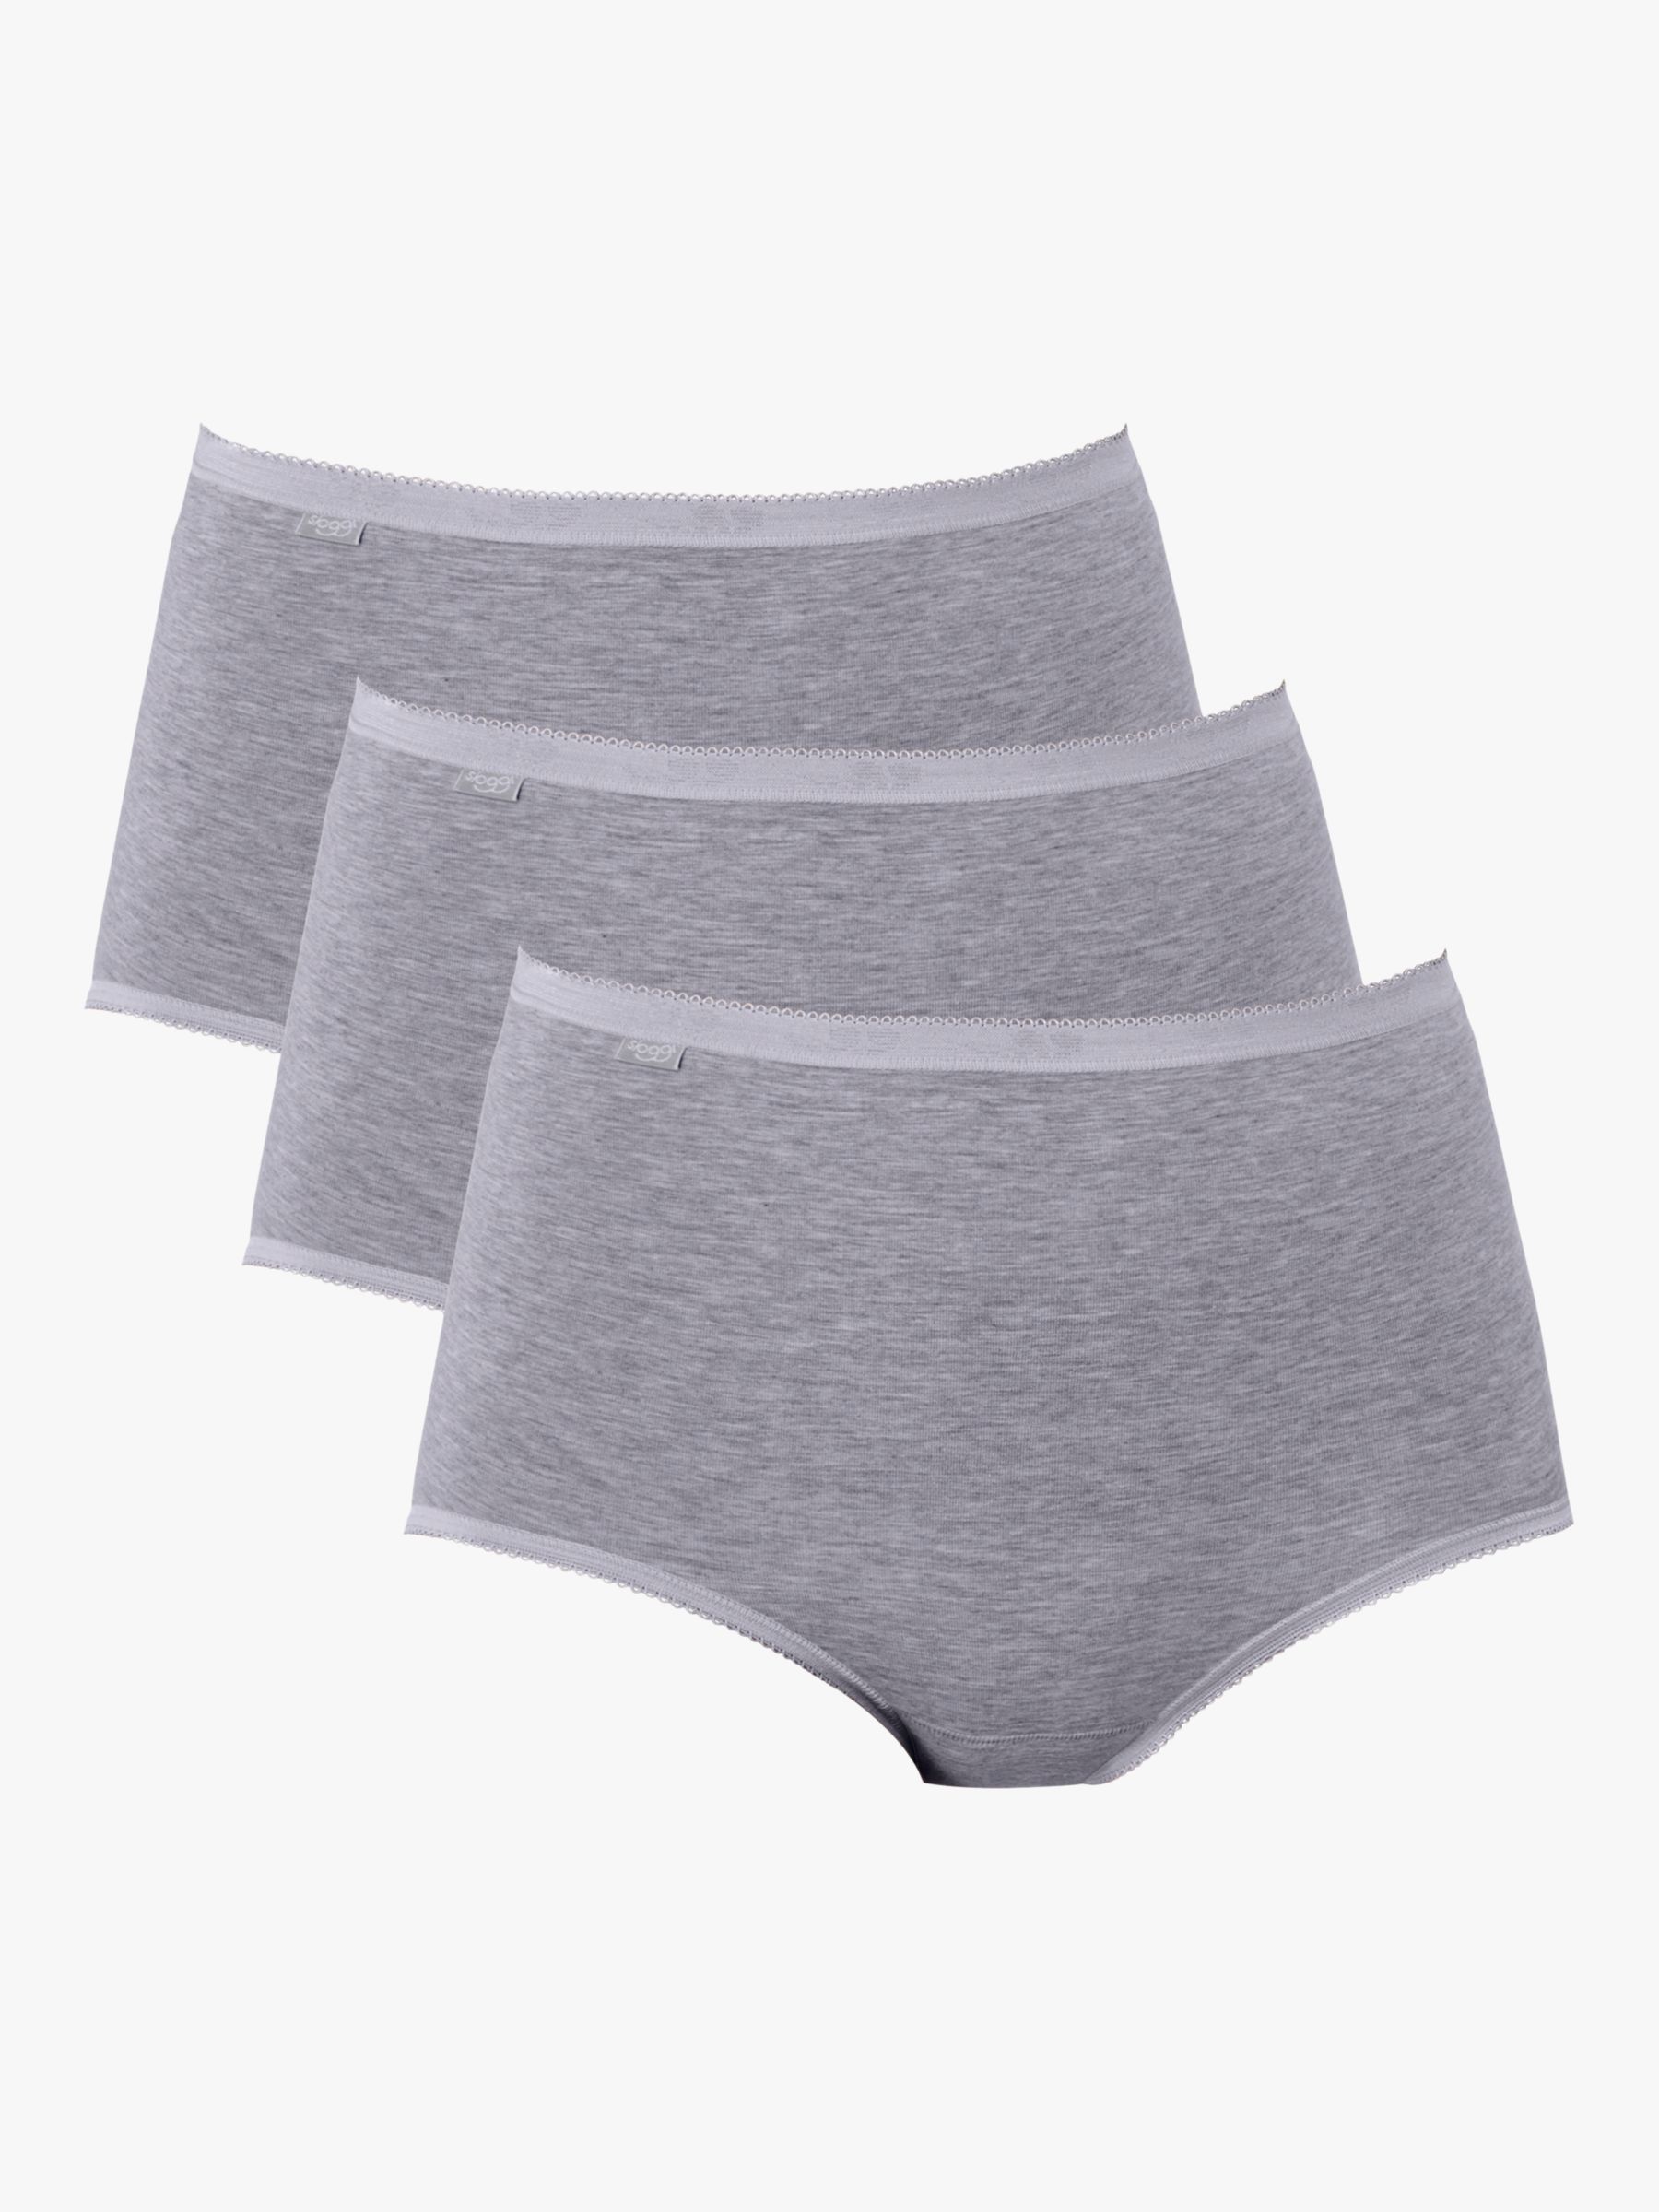 Women's Multipack Underwear